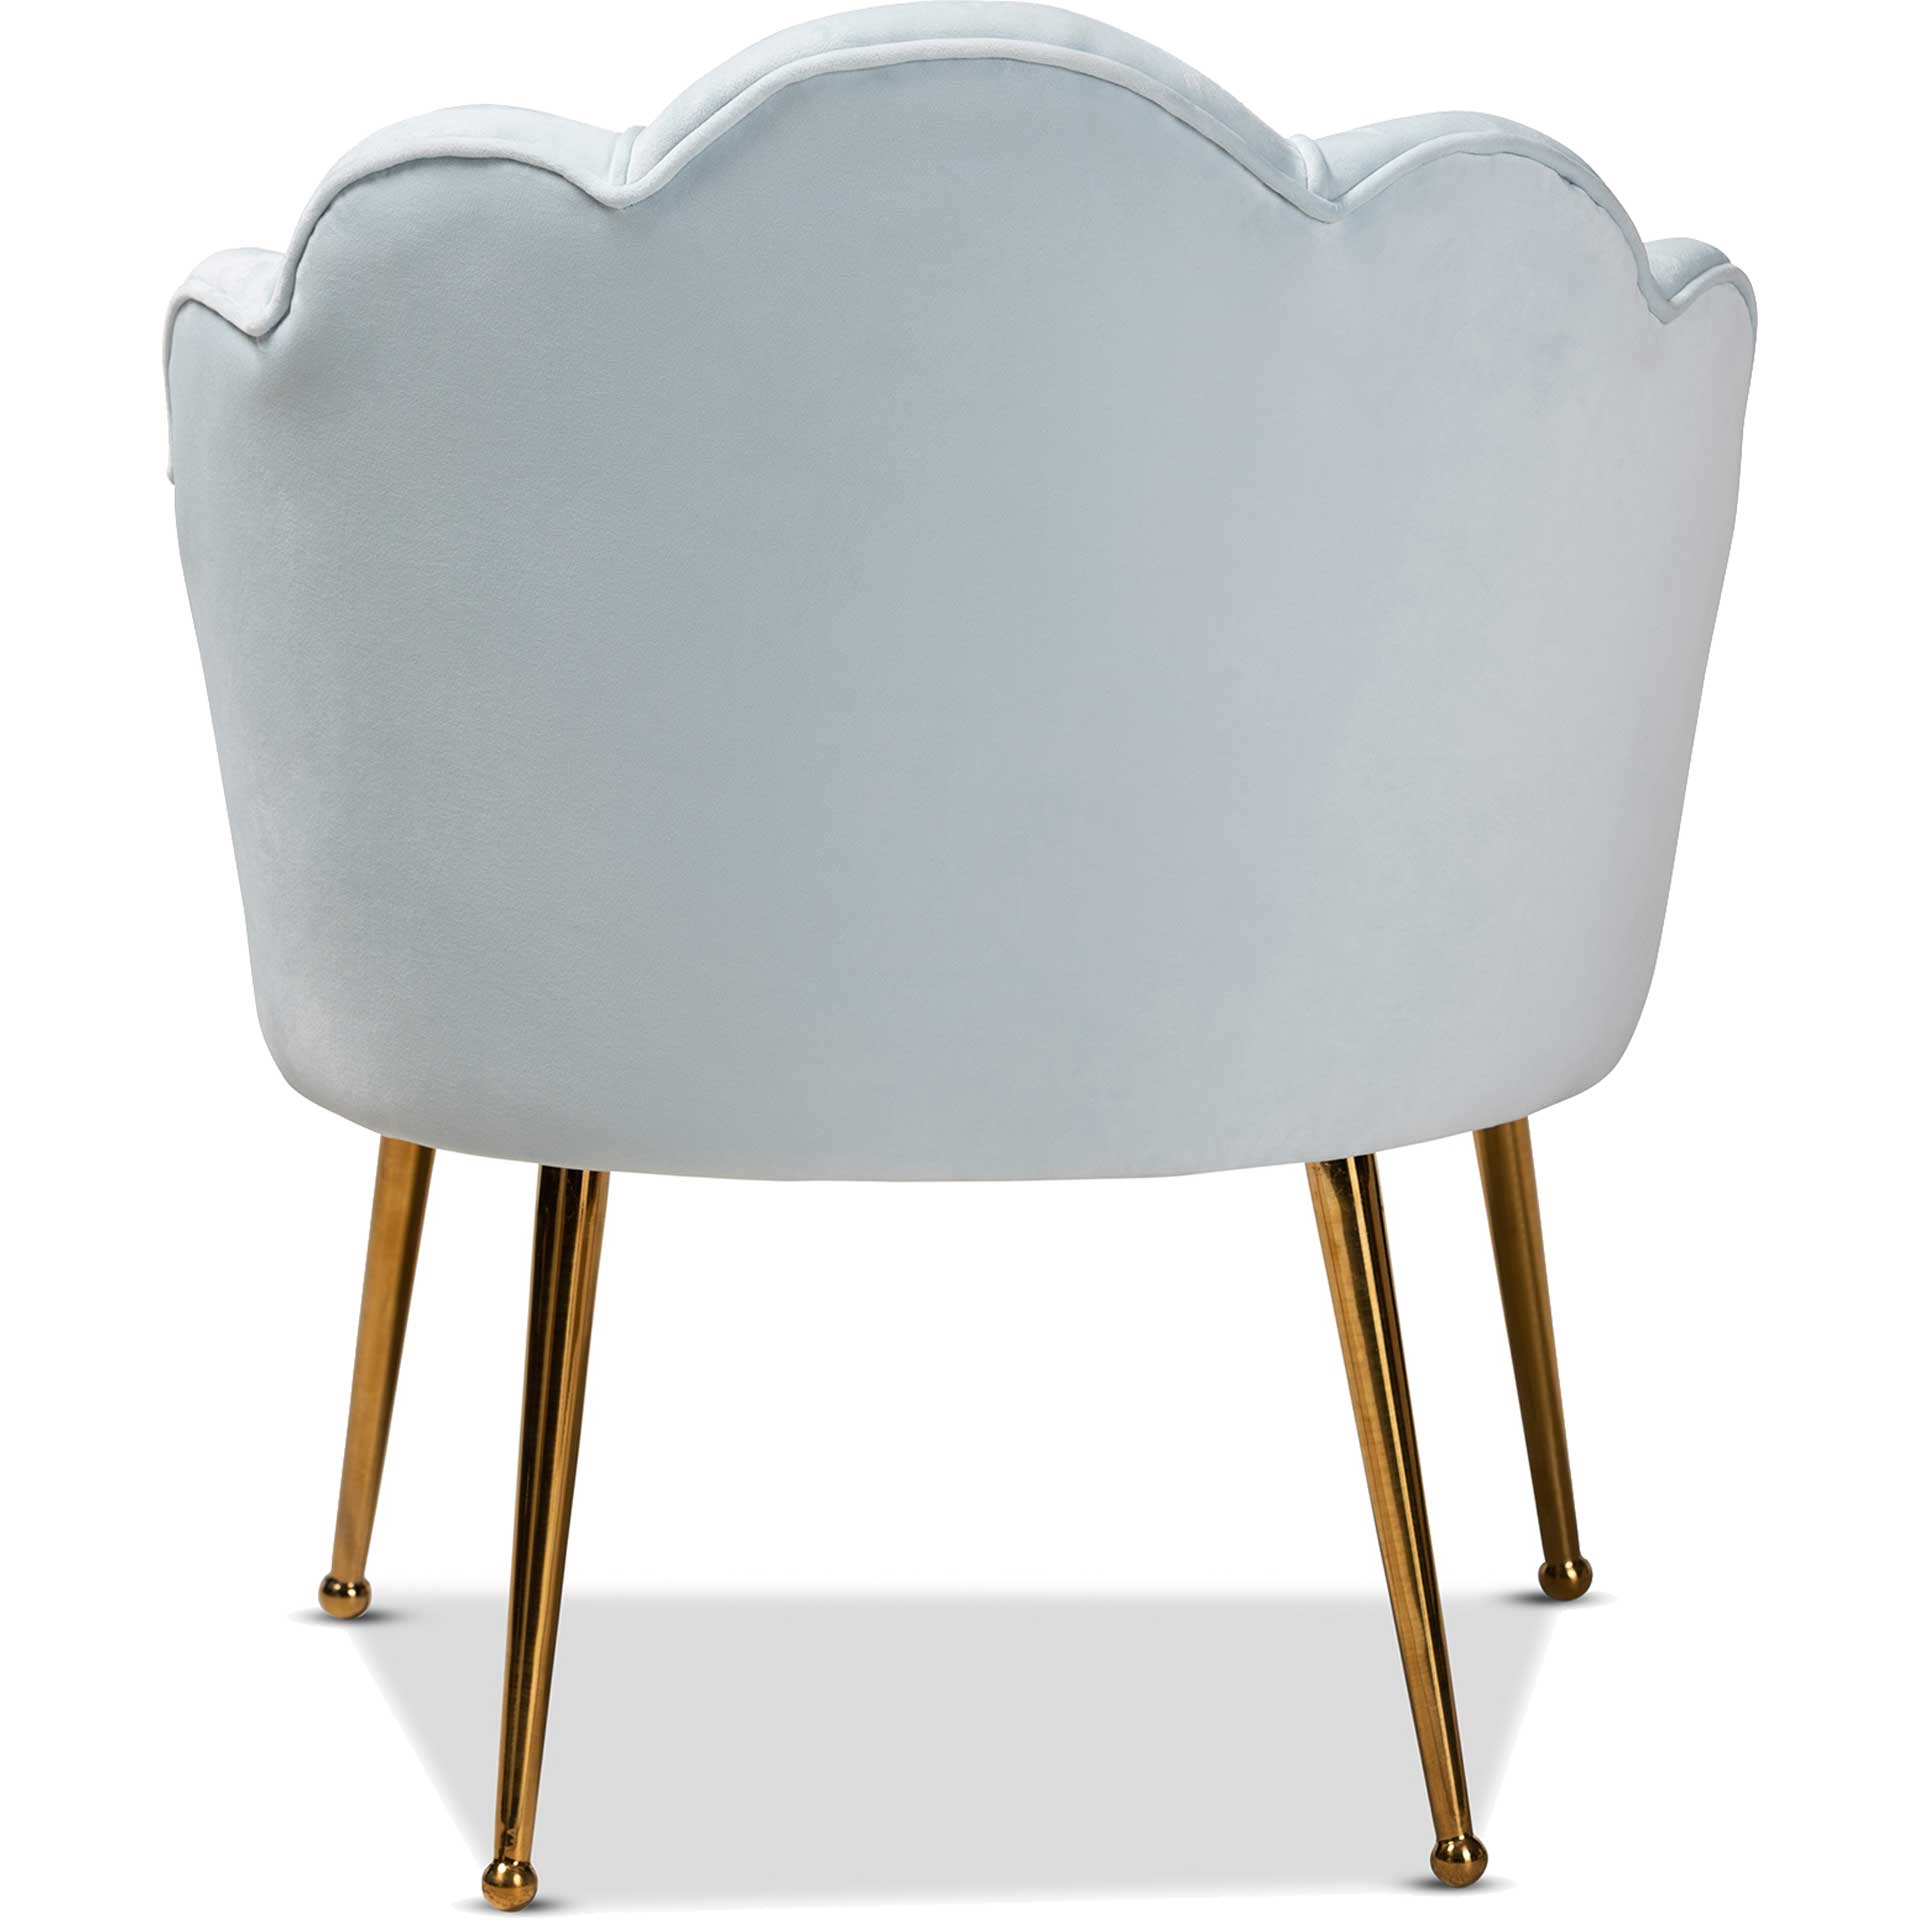 Ciarra Velvet Fabric Upholstered Chair Light Blue/Gold